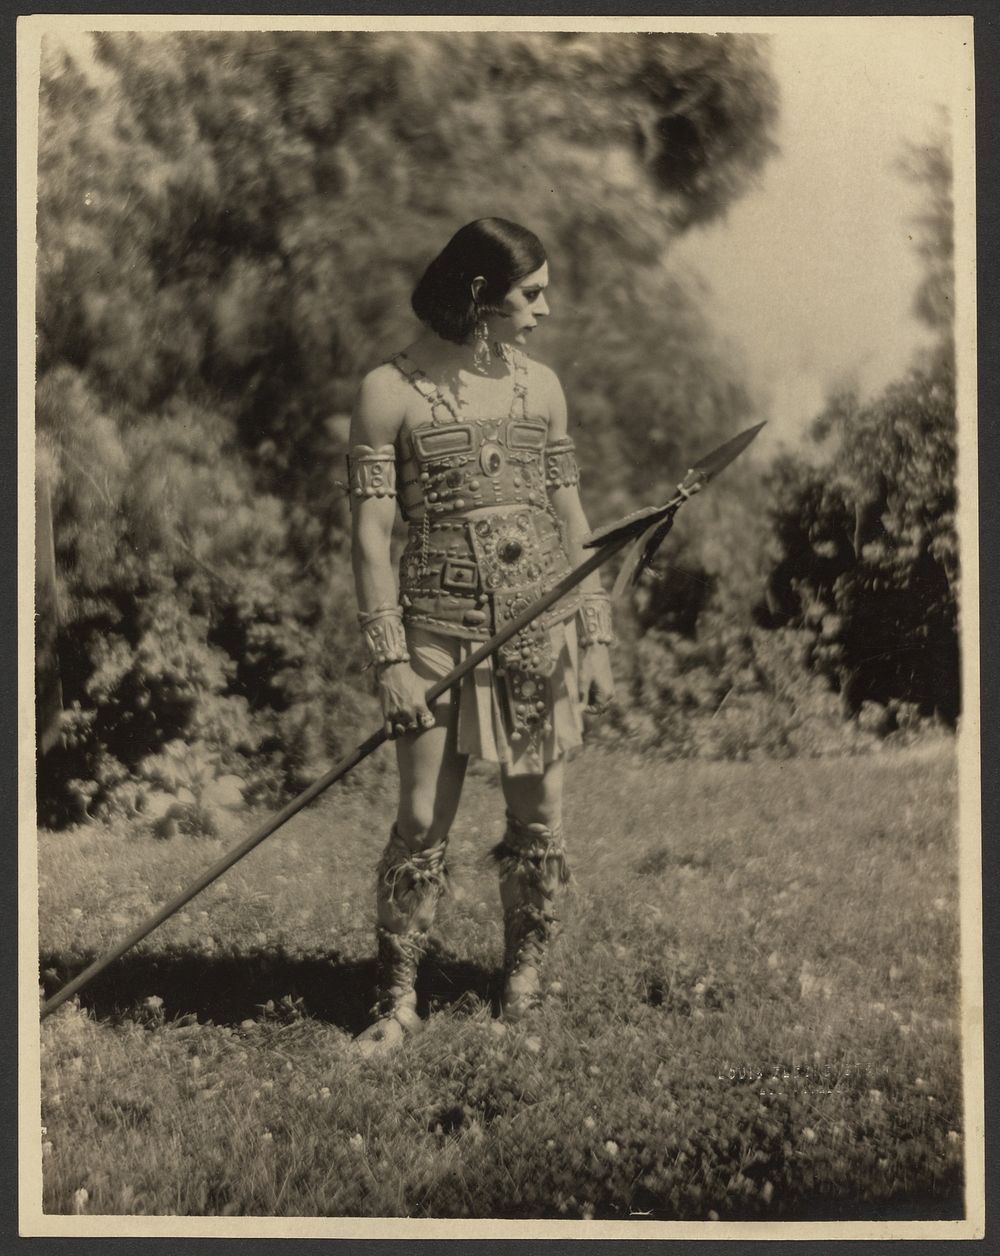 Kosloff as Warrior by Louis Fleckenstein